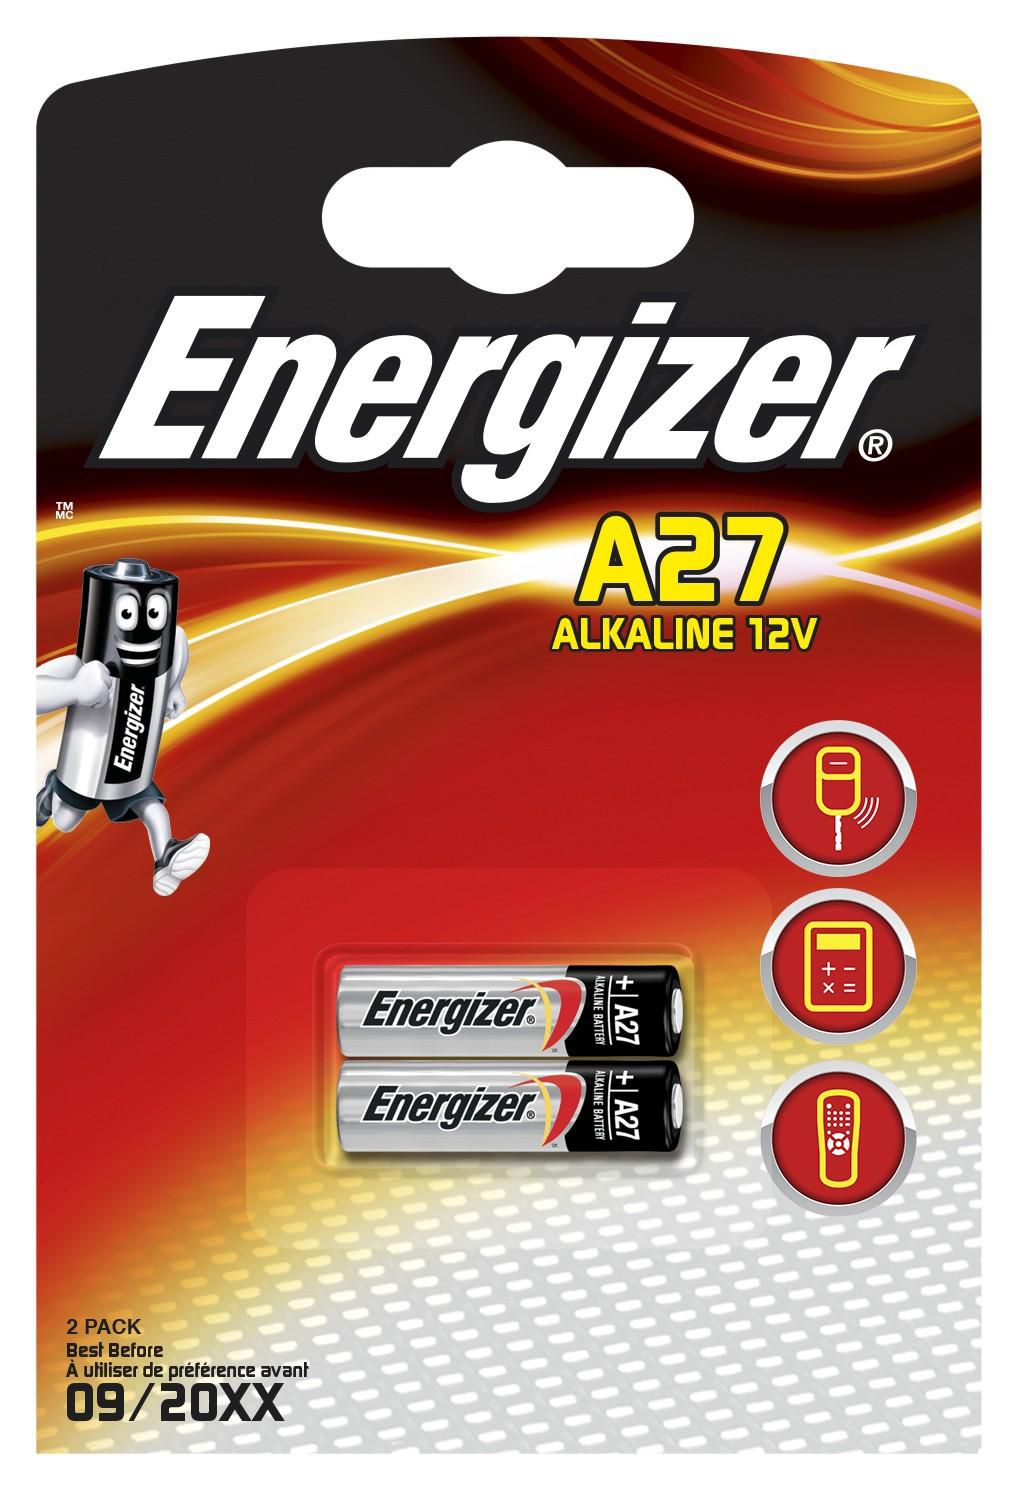 Energizer ALKALINE A27 2PK EN-639333, Single-use  639333 - eet01